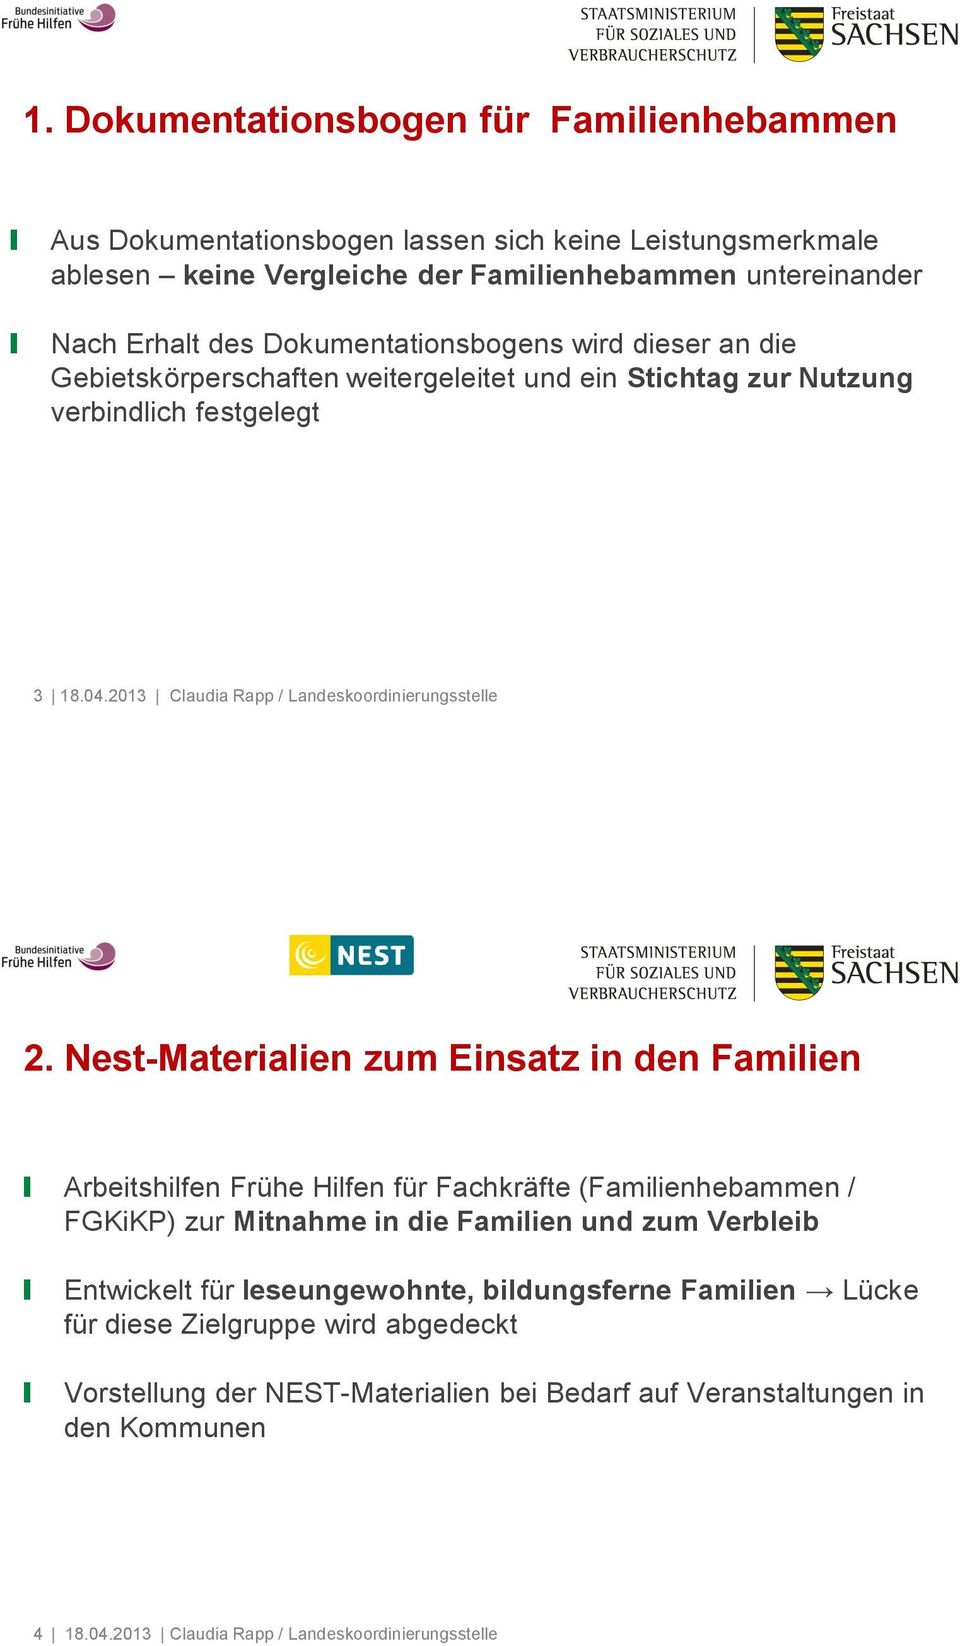 Nest-Materialien zum Einsatz in den Familien Arbeitshilfen Frühe Hilfen für Fachkräfte (Familienhebammen / FGKiKP) zur Mitnahme in die Familien und zum Verbleib Entwickelt für